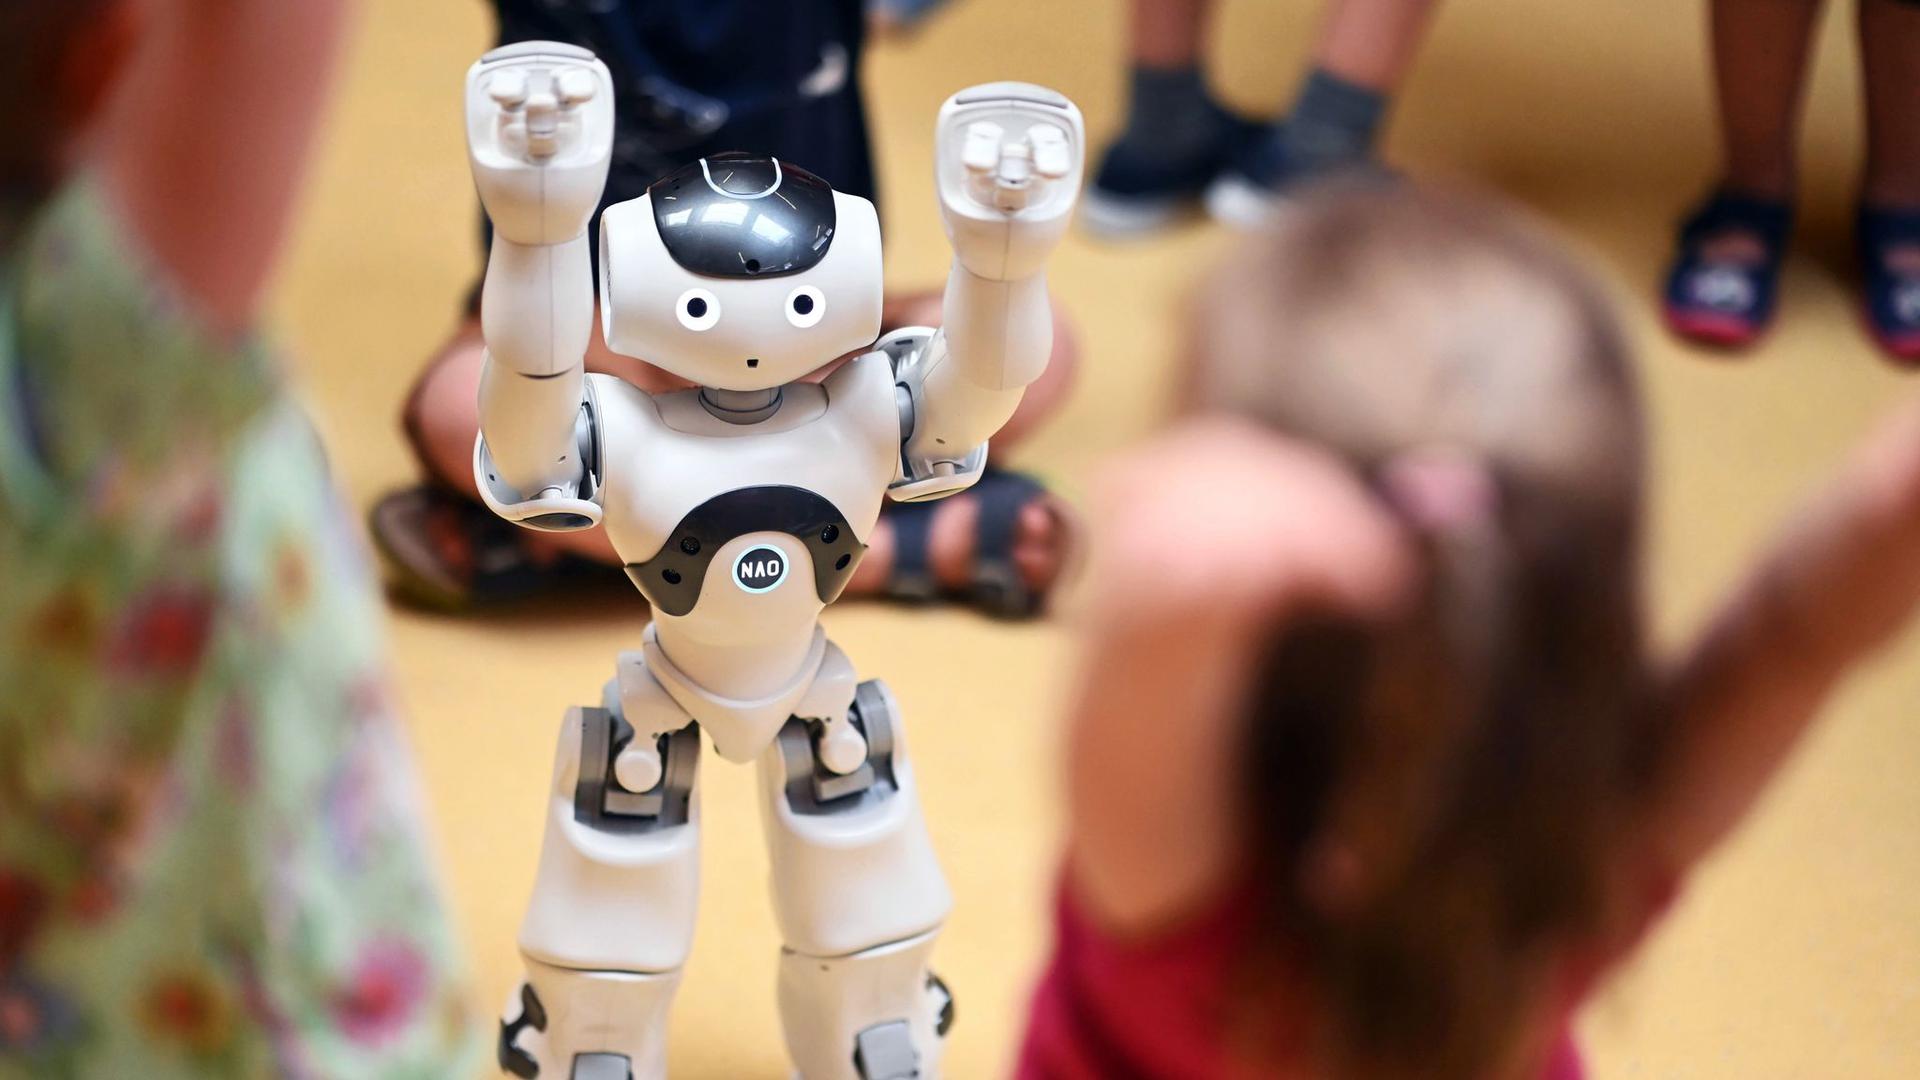 In der inklusiven Kita im Lebenshilfehaus Karlsruhe wird der humanoide Roboter „NAO“ vorgestellt.